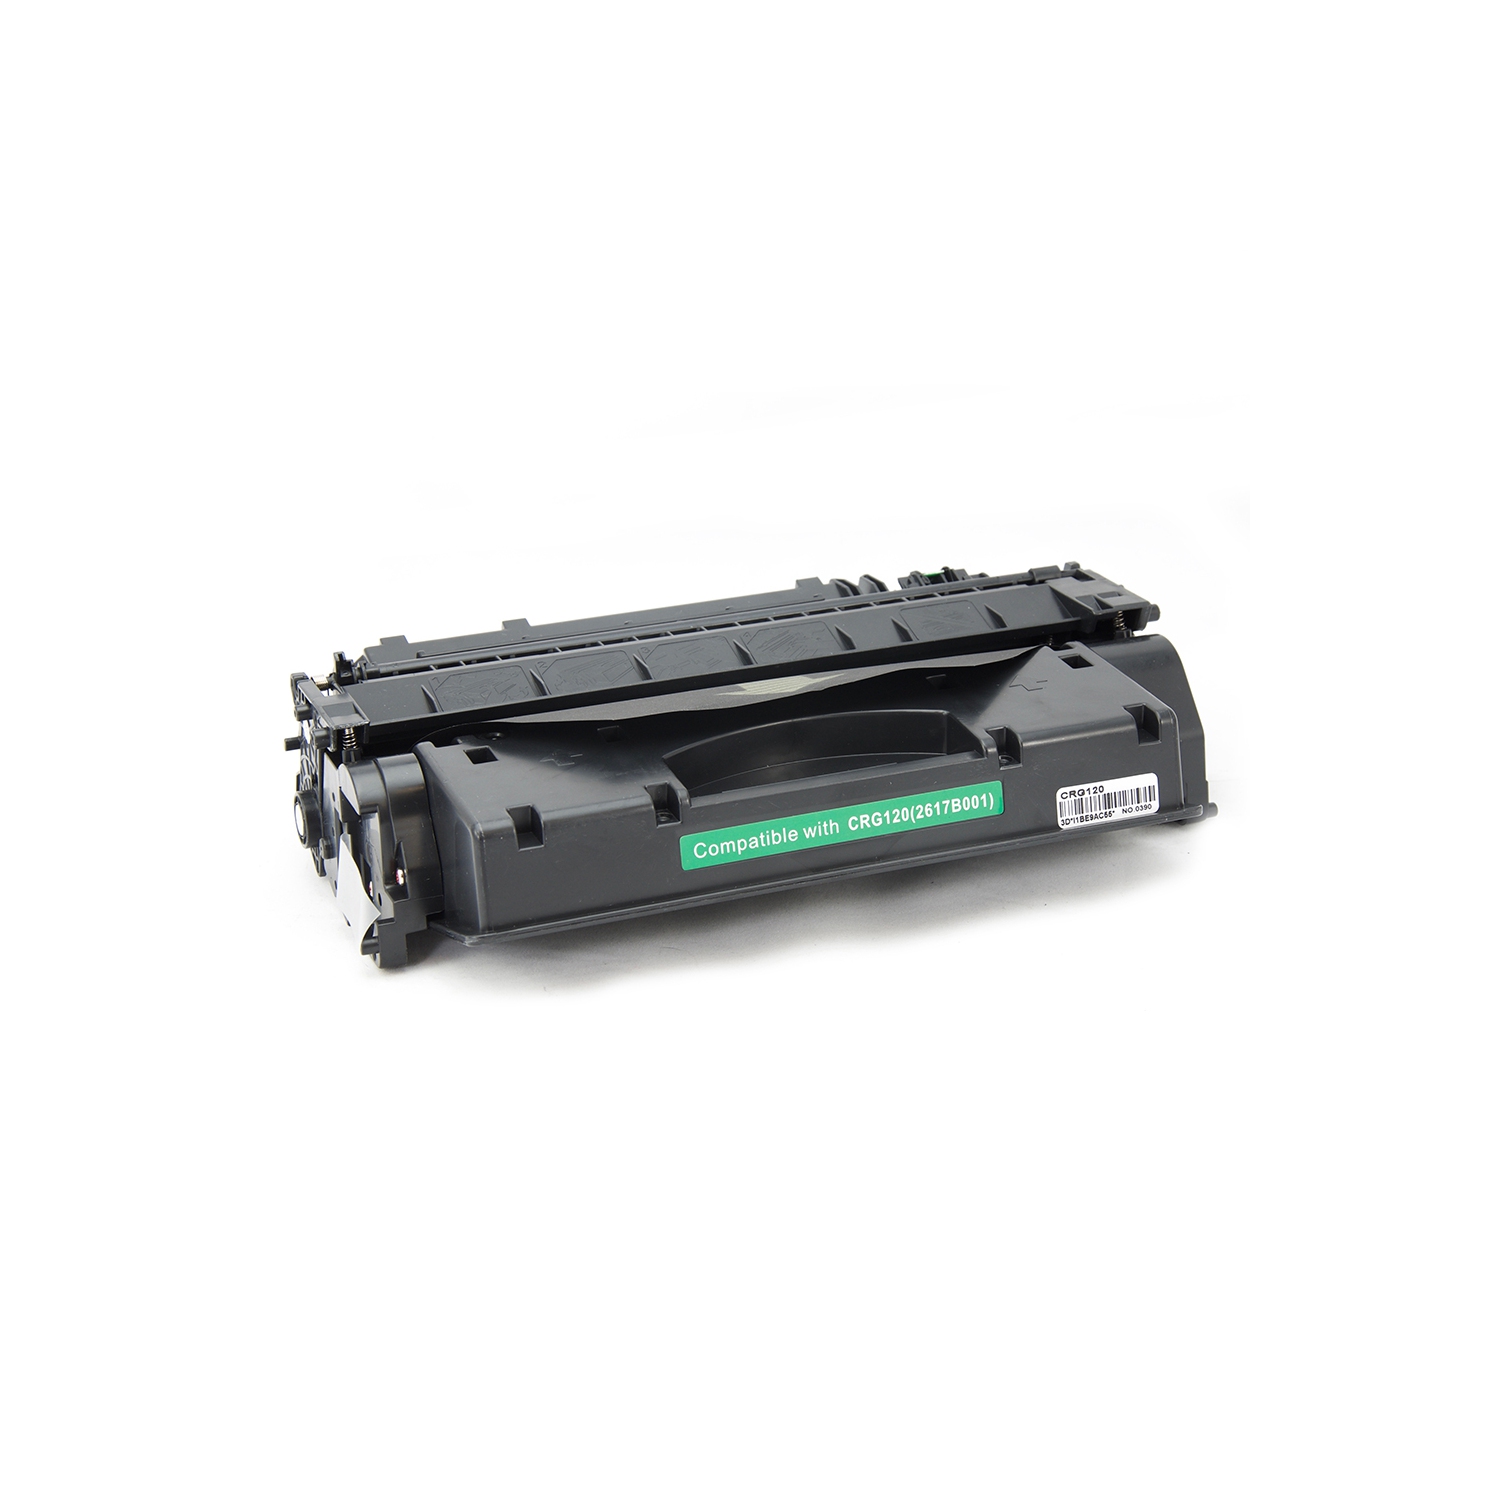 Gotoners™ Generic Packaged Replacement Canon 120 (2617B001) Black Toner Cartridge For ImageCLASS D1120, D1150, D1170, D1180, D1320, D1350, D1370